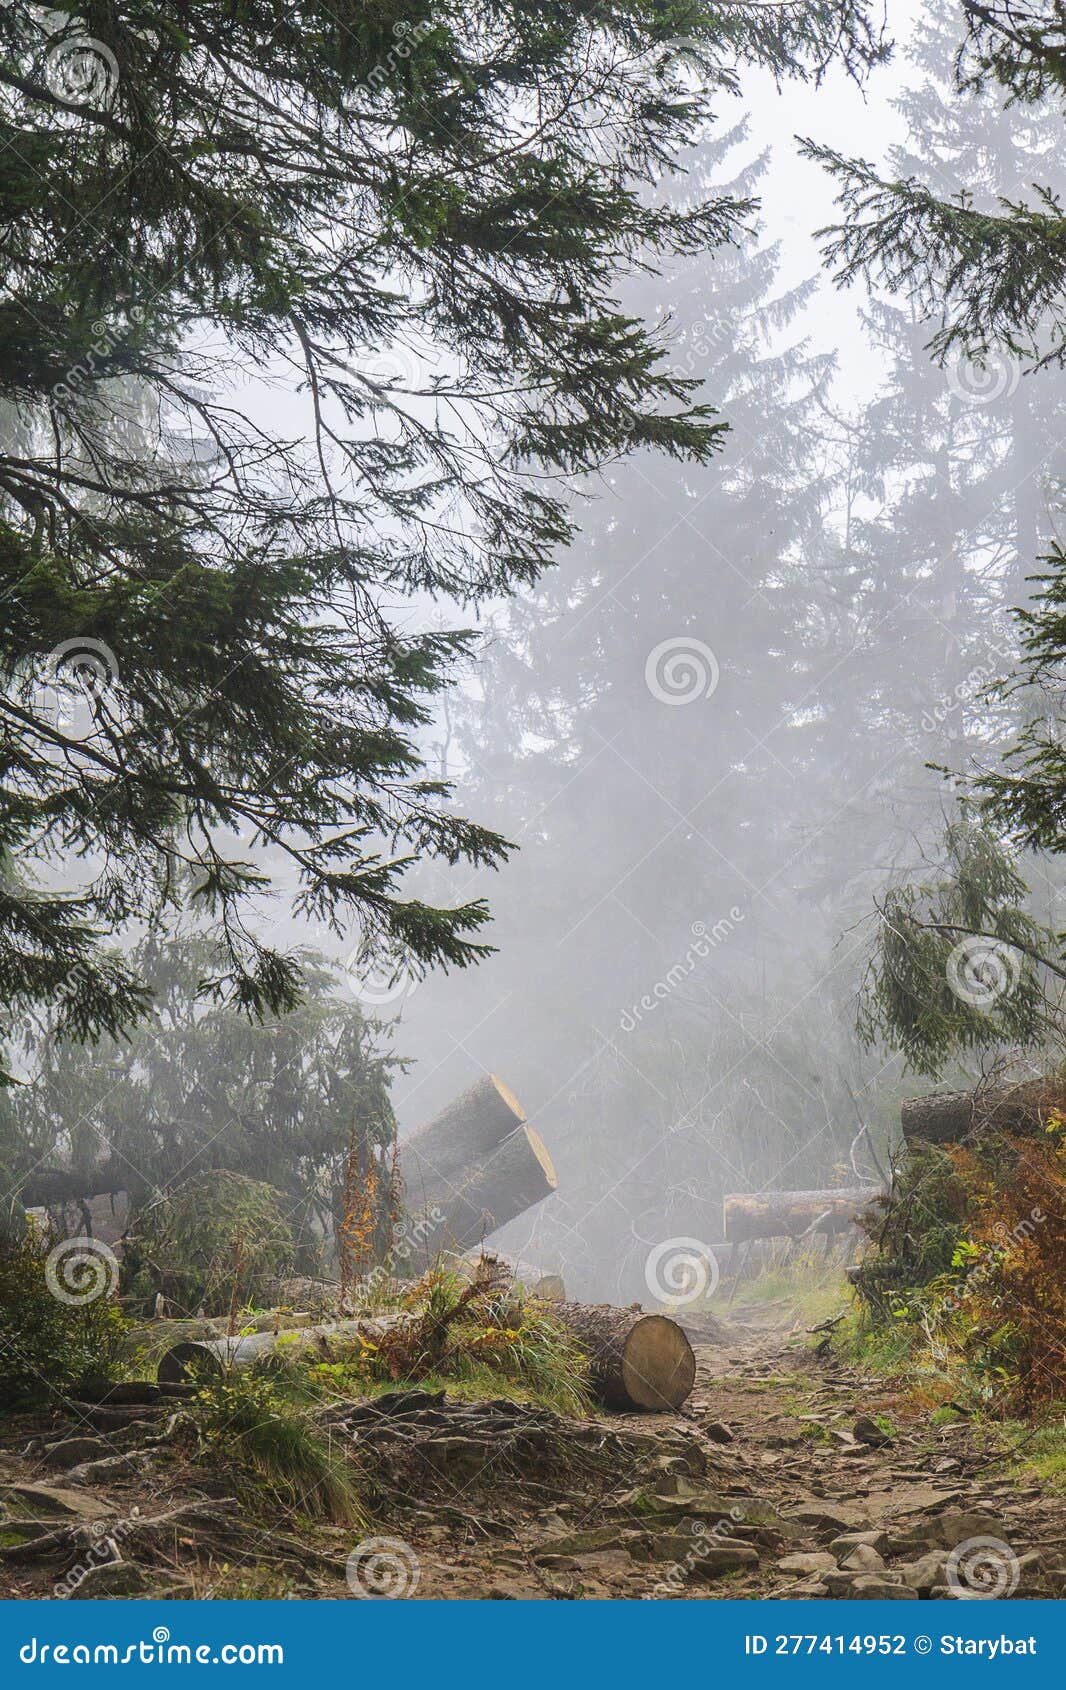 misty hiking trail in the beskid zywiecki near zawoja, poland